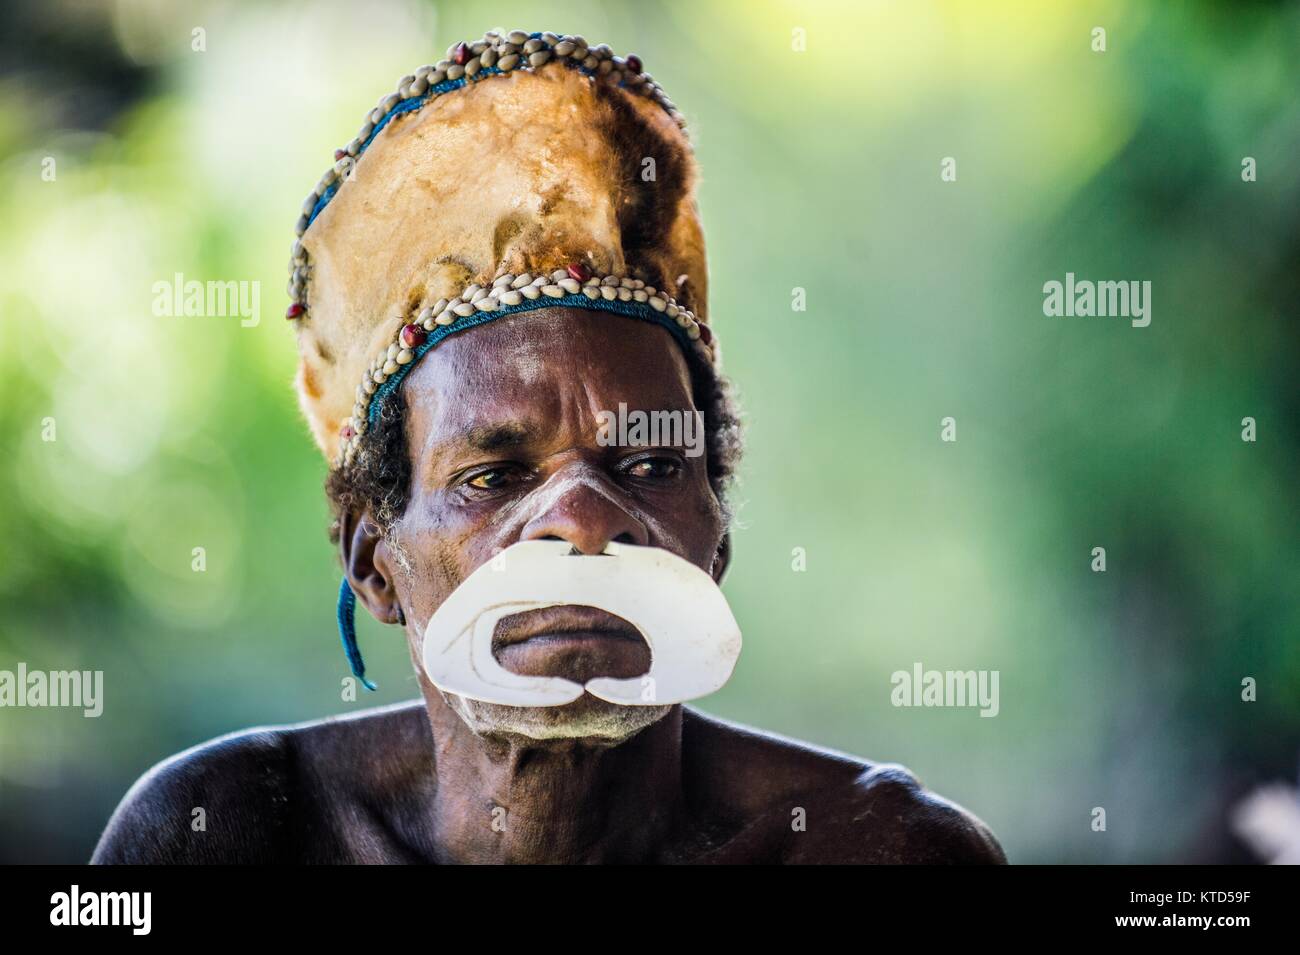 ATSY YOUW DORF, Bezirk, ASMAT REGION, IRIAN JAYA, Neuguinea, Indonesien - 23. MAI 2016: Porträt eines Mannes aus dem Volk der Asmat Menschen mit Rit Stockfoto